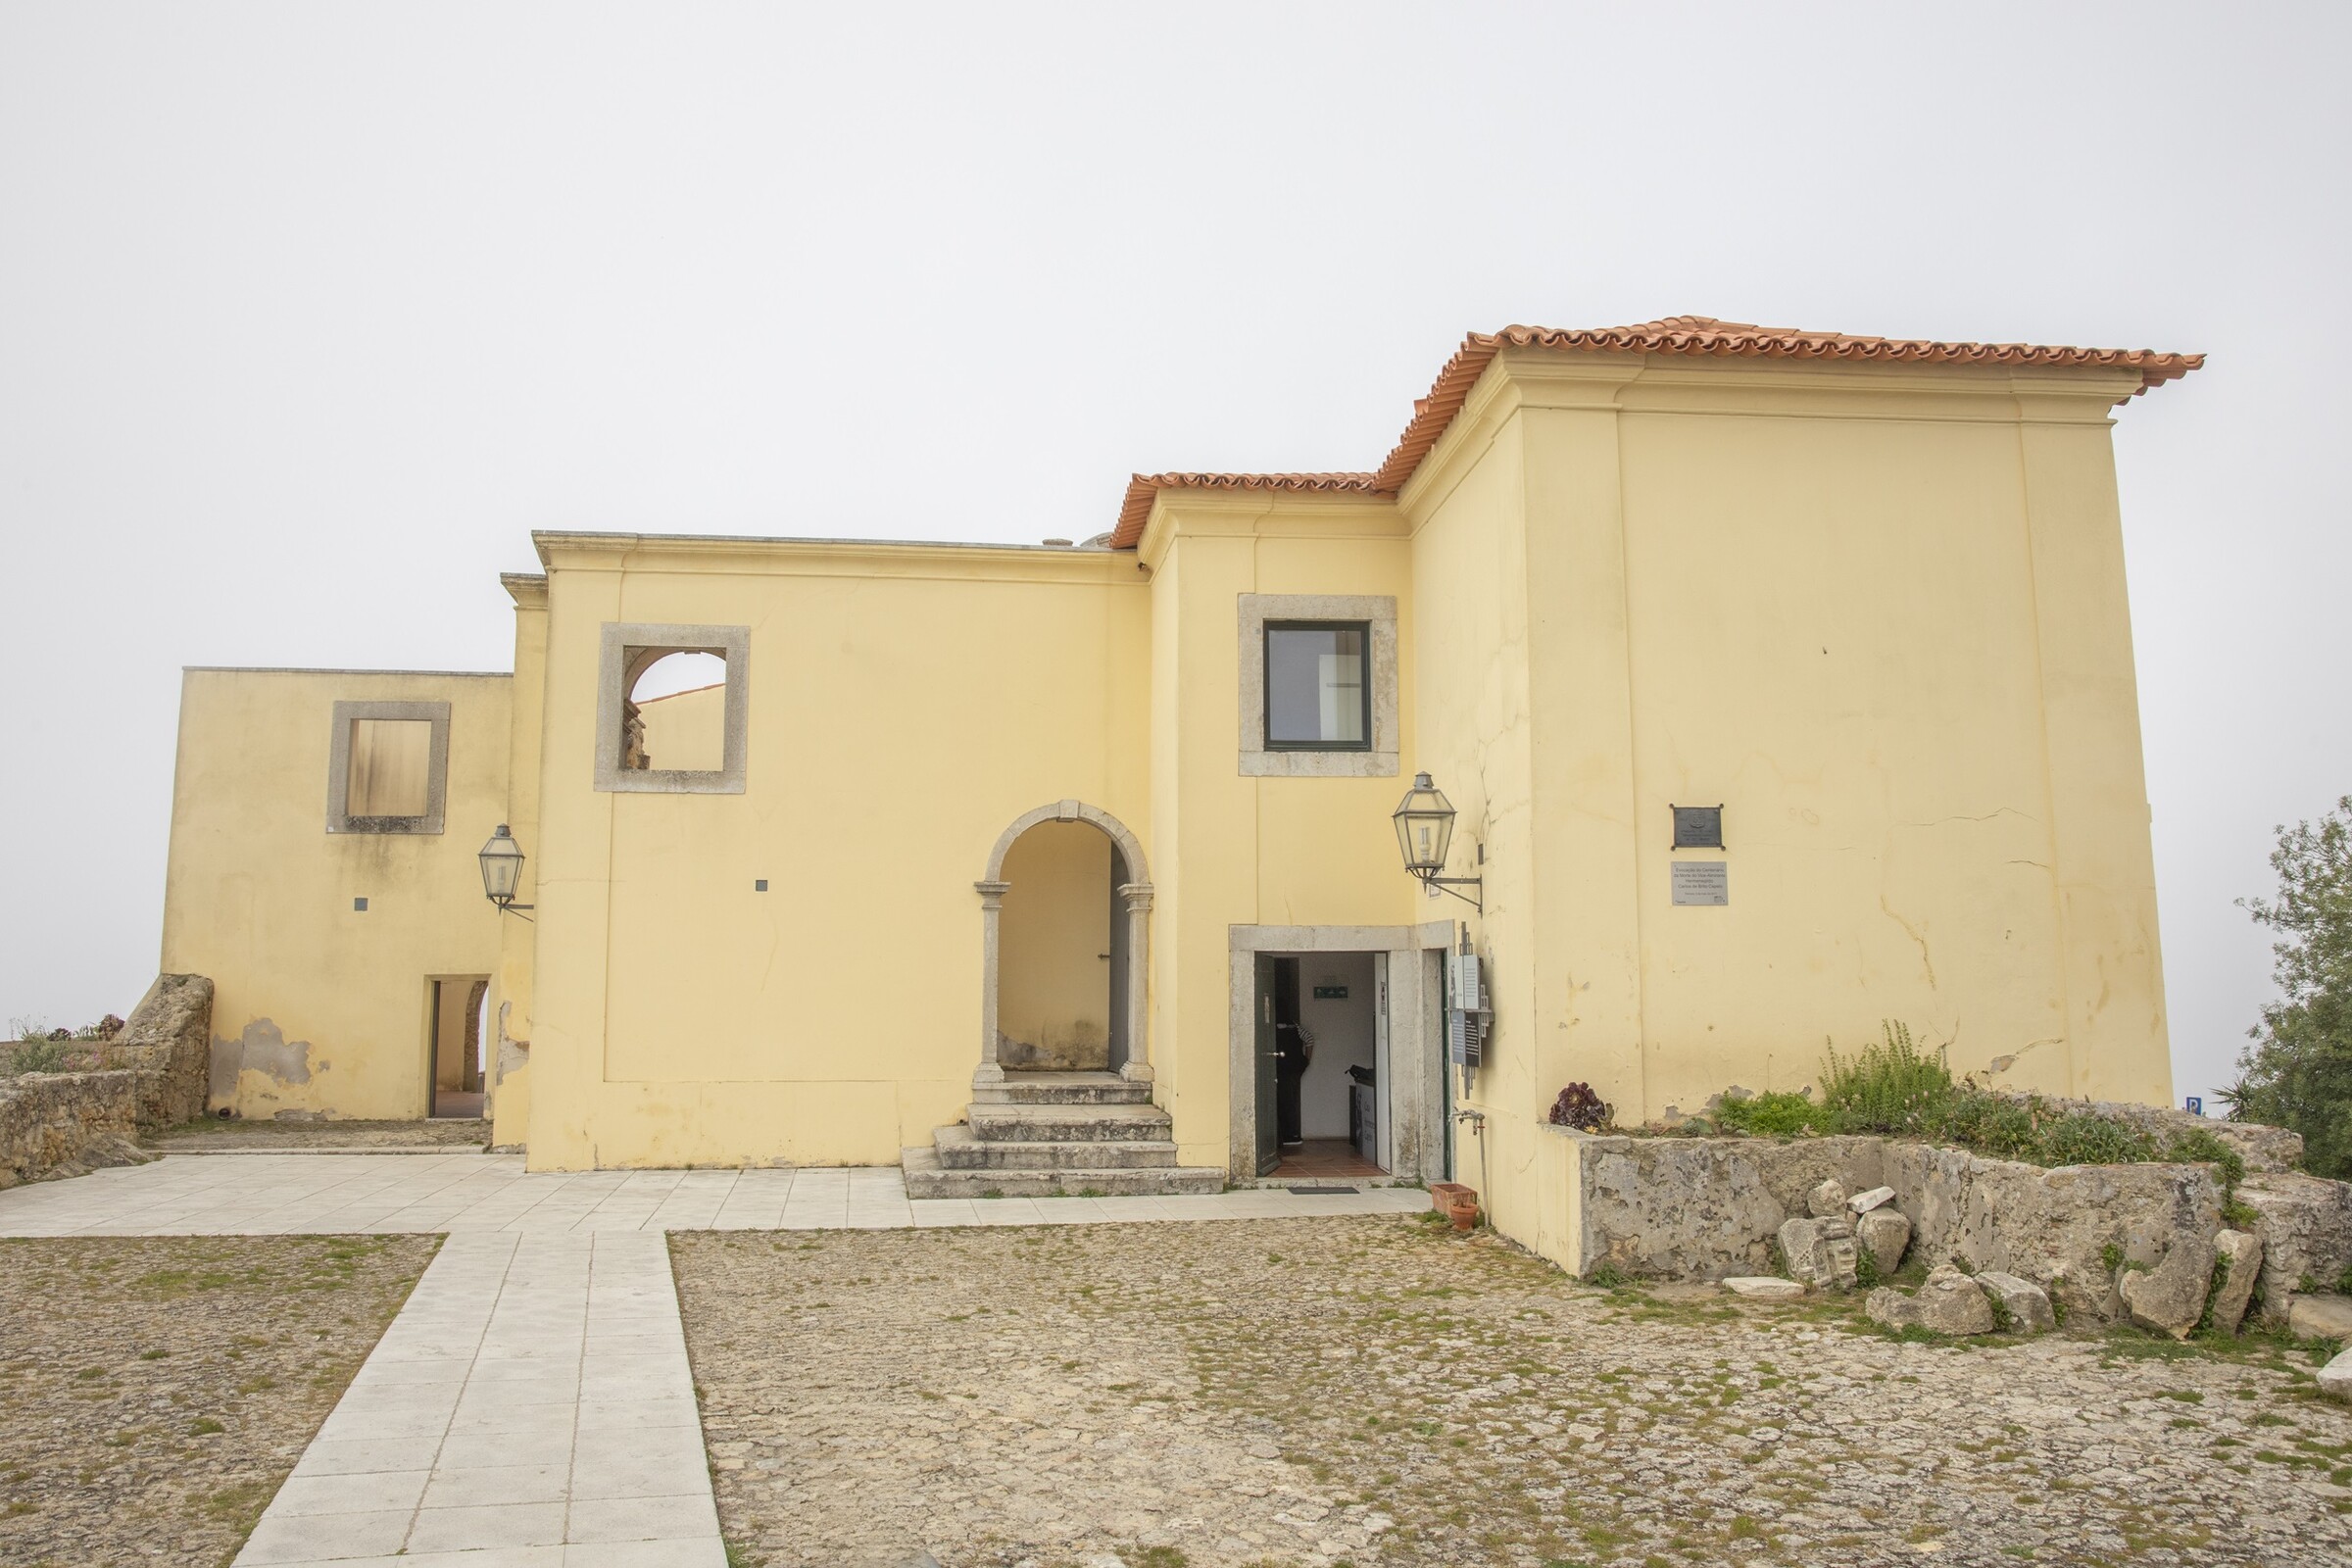 Casa Capelo/Castelo: concurso para reforço estrutural a decorrer